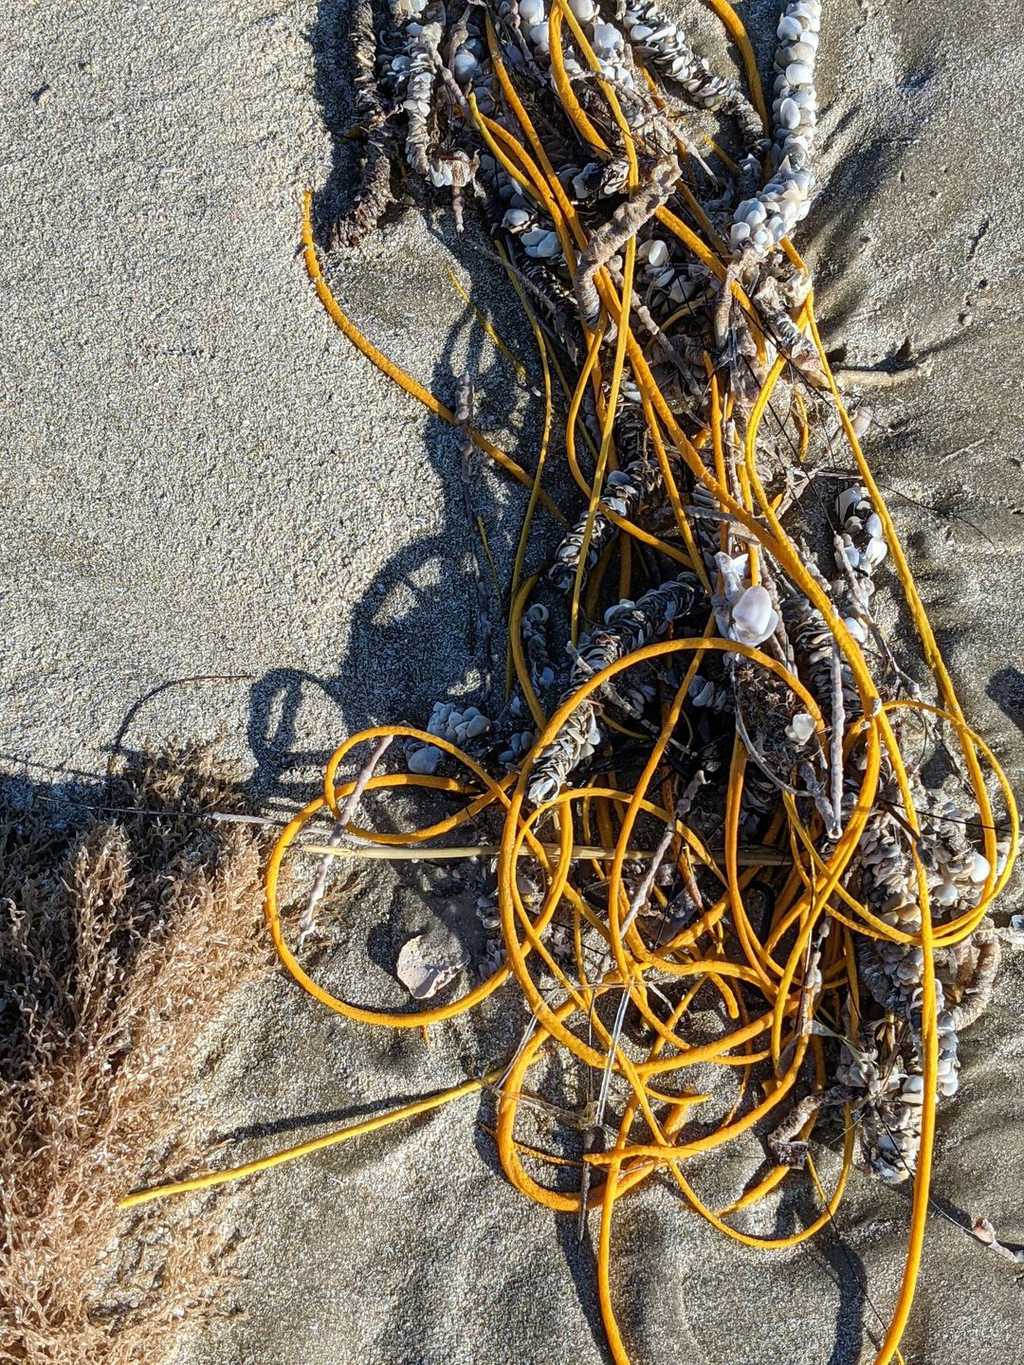 Le corail-fouet qui s'est échoué sur la plage de l'île de Padre, photographié par une guide du Padre Island National Seashore. © R. Claussen, Padre Island National Seashore